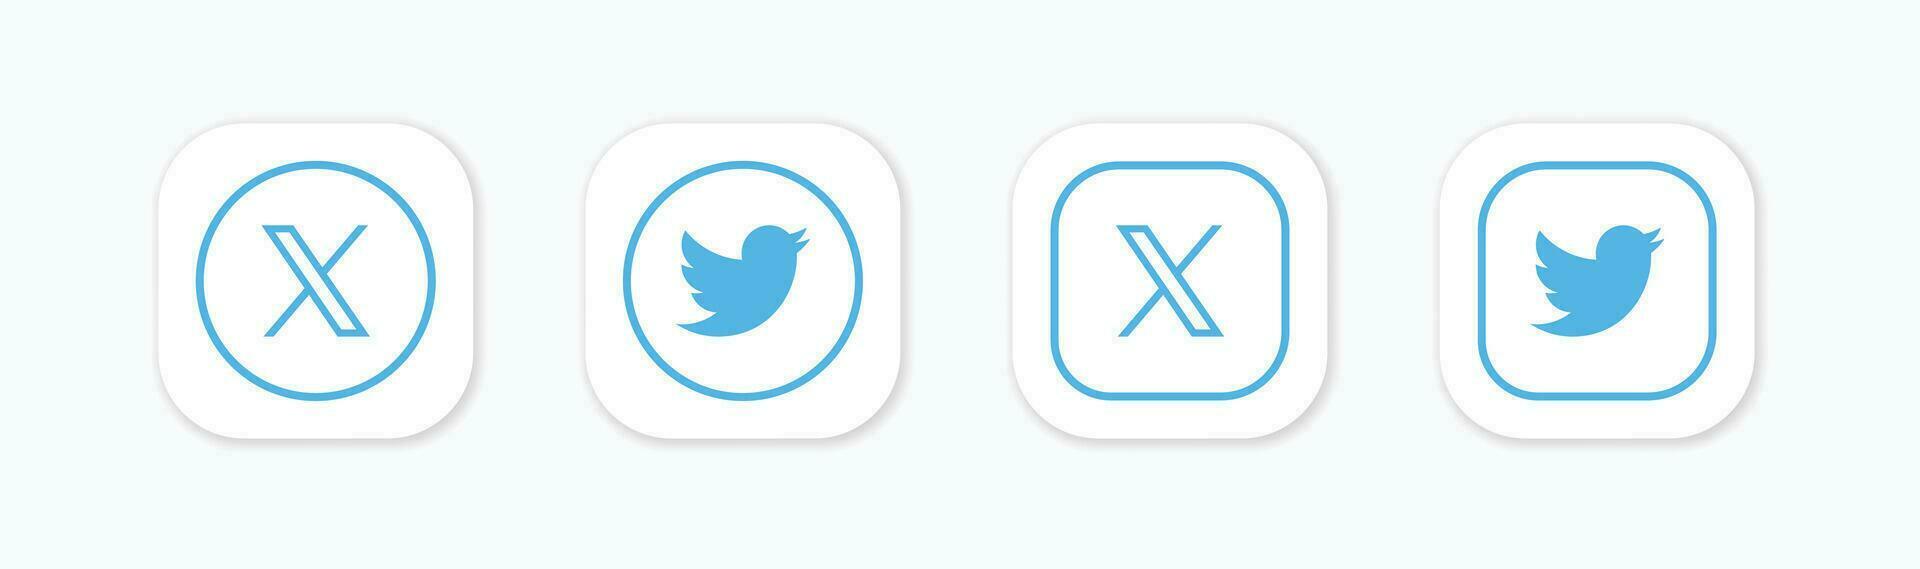 cinguettio nuovo logo . cinguettio icone. nuovo cinguettio logo X 2023. X sociale media icona. vettore